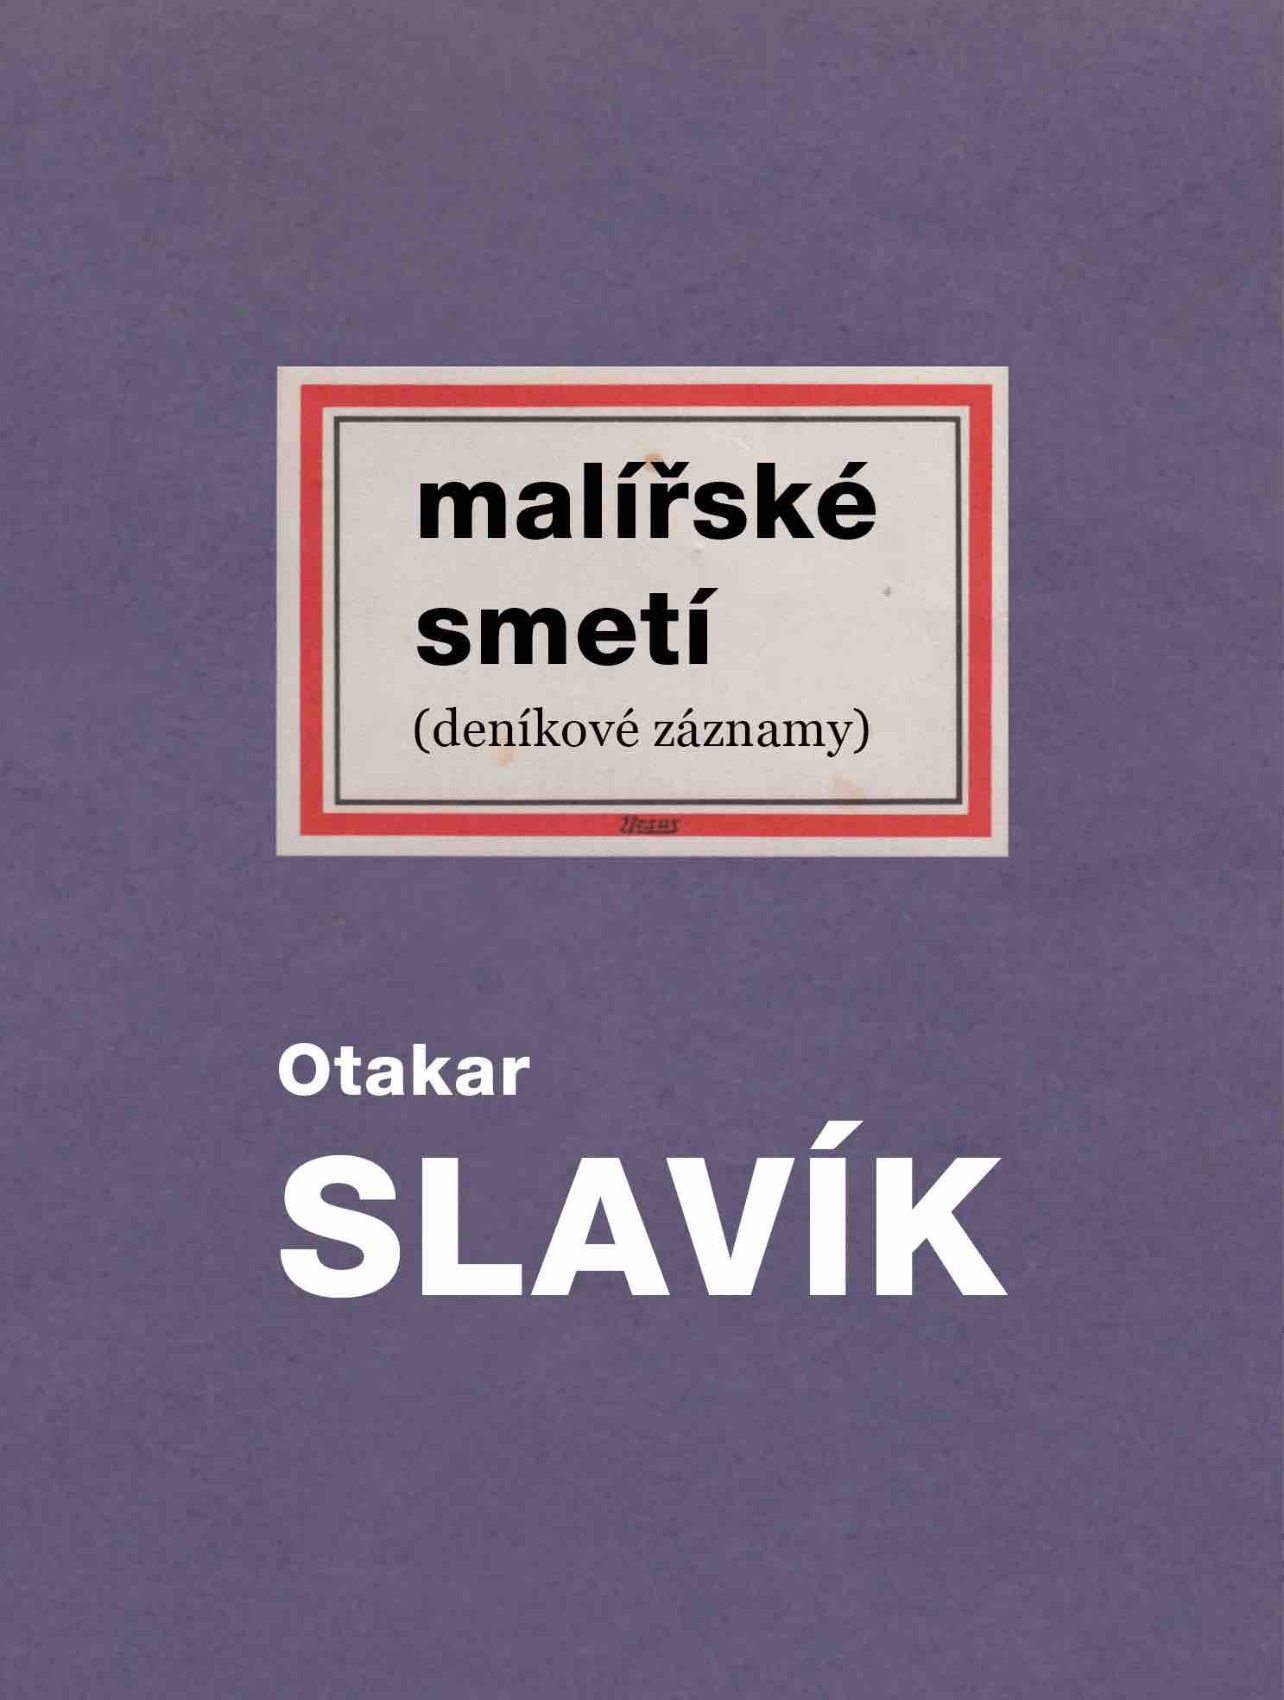 Otakar Slavík’s Painterly Sweepings